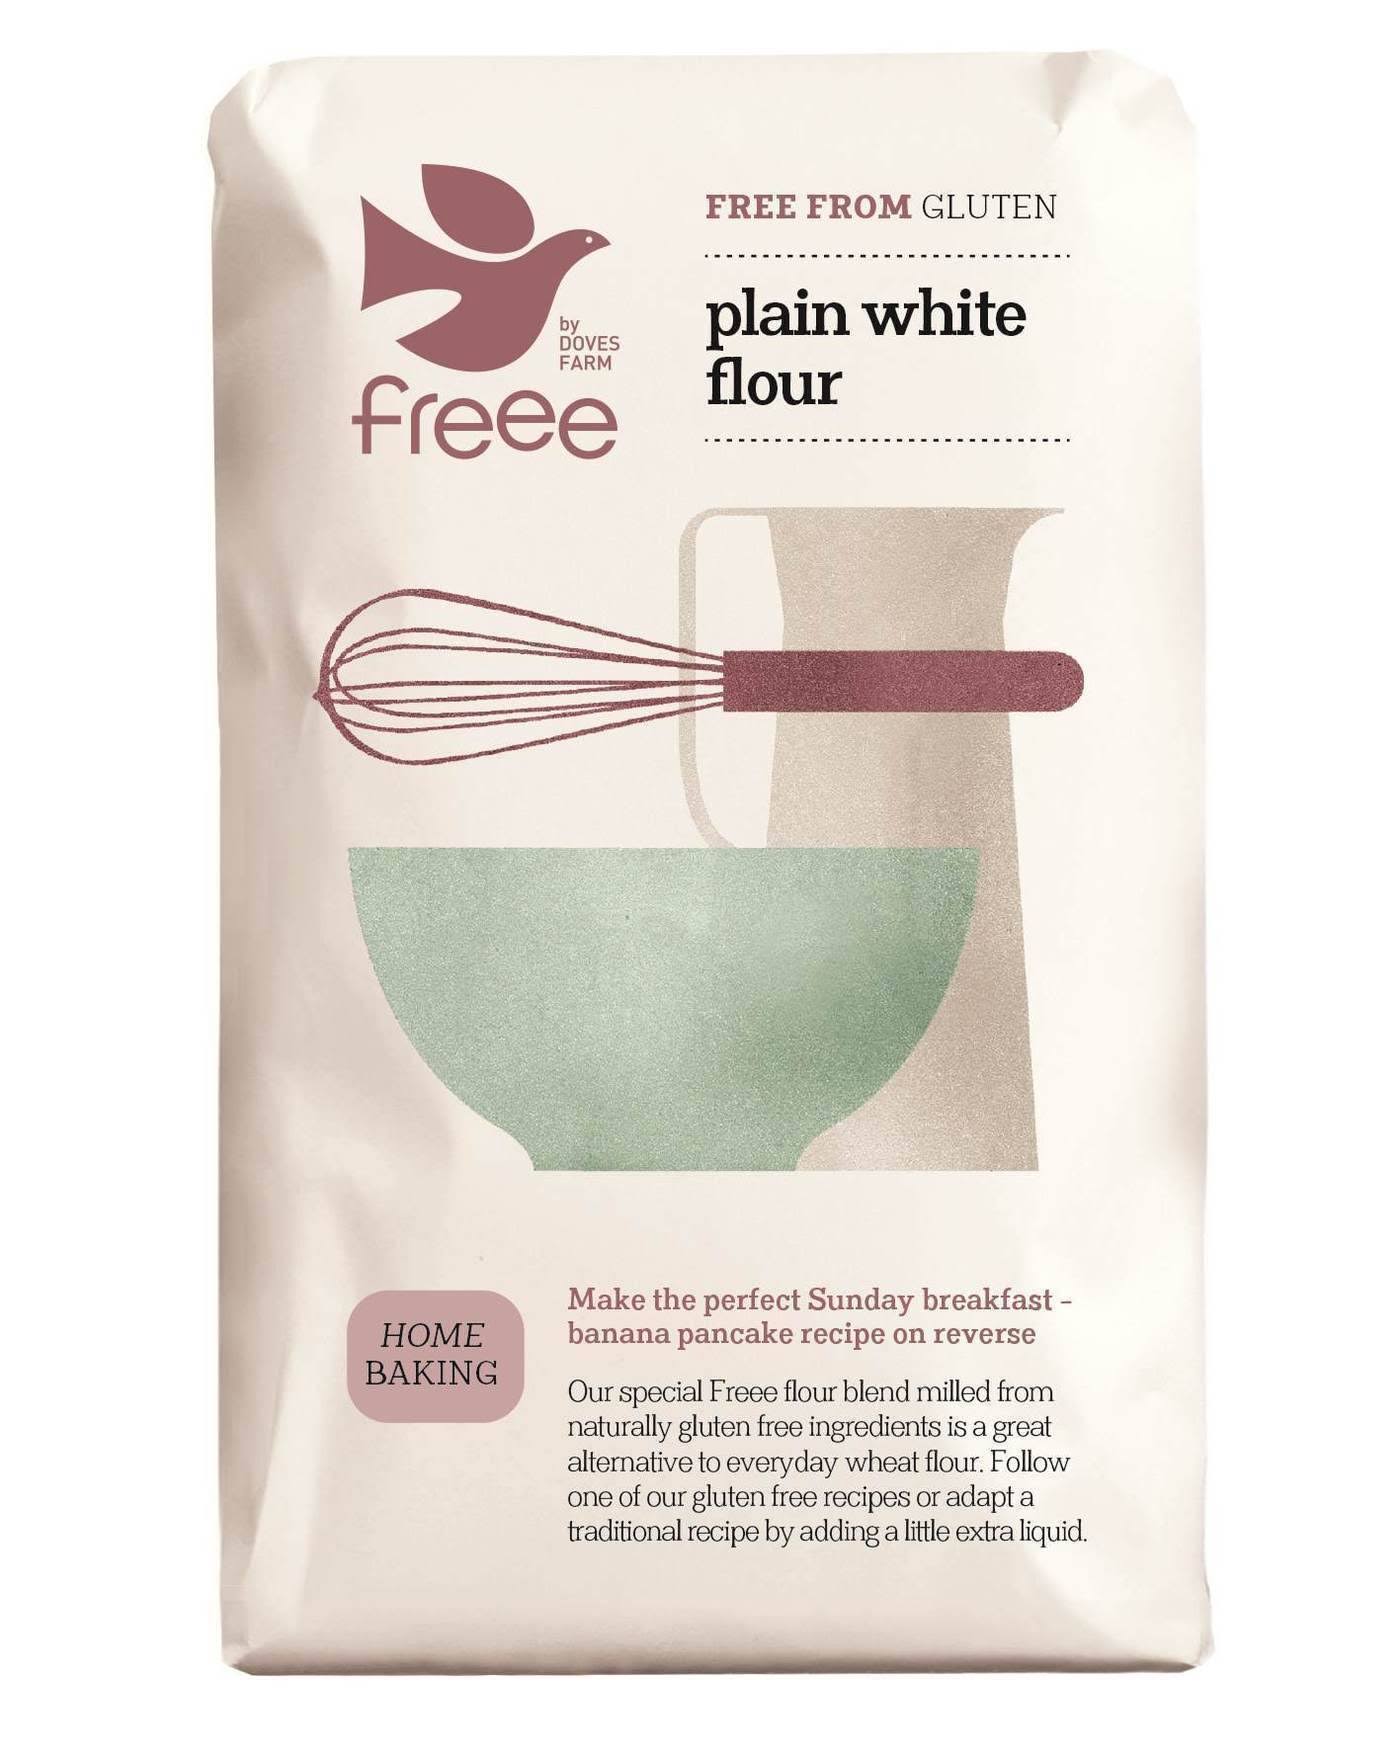 Doves Farm Free From Gluten Plain White Flour - 1kg